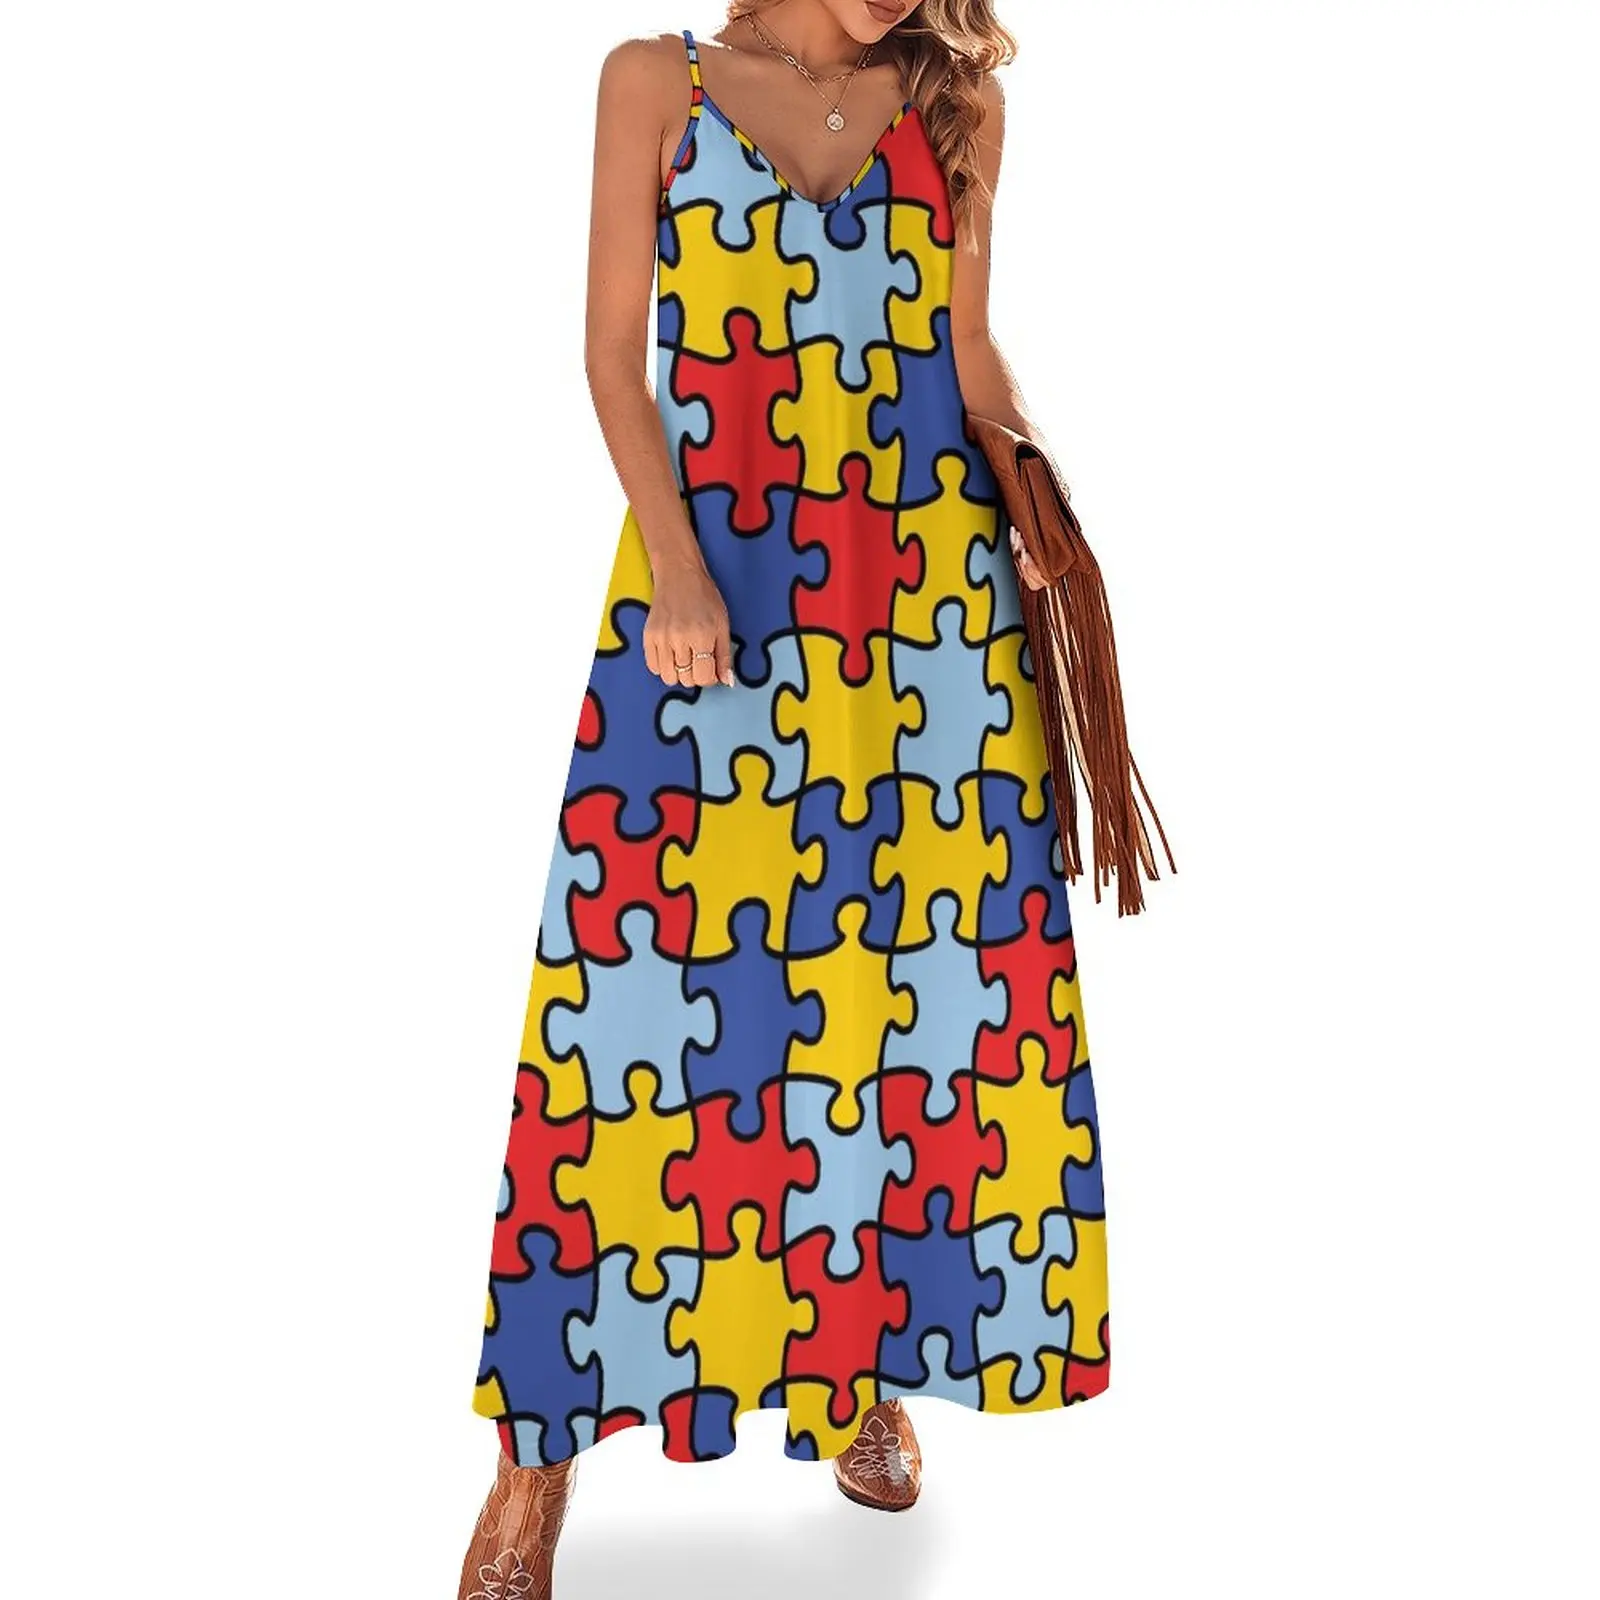 

Autism Awareness Puzzle Pattern Sleeveless Dress Long veiled dresses Dress women Women's summer dresses summer dress daily